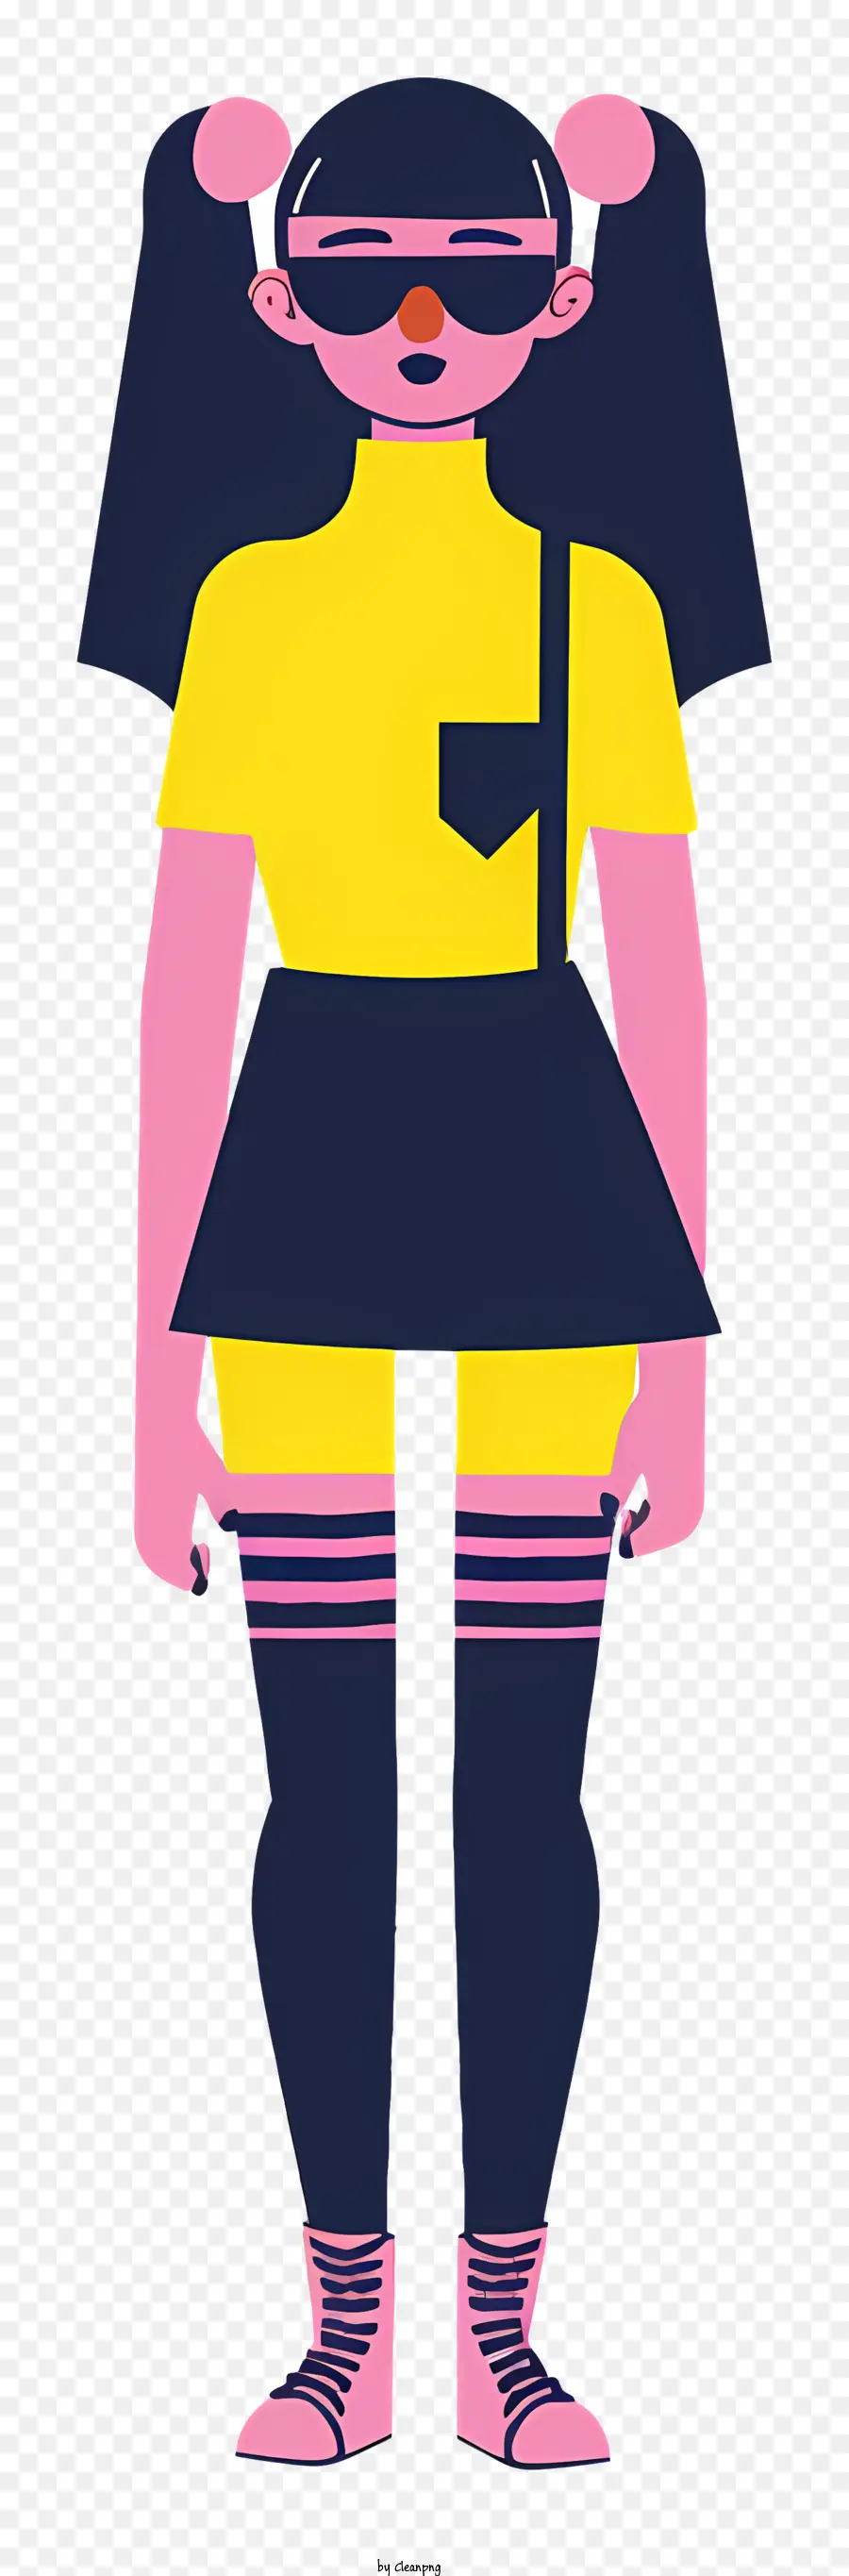 Mode Girl Cartoon Charakter Gelb und rosa Outfit lange Haarkonzentration - Zeichentrickfigur in gelb -rosa Outfit